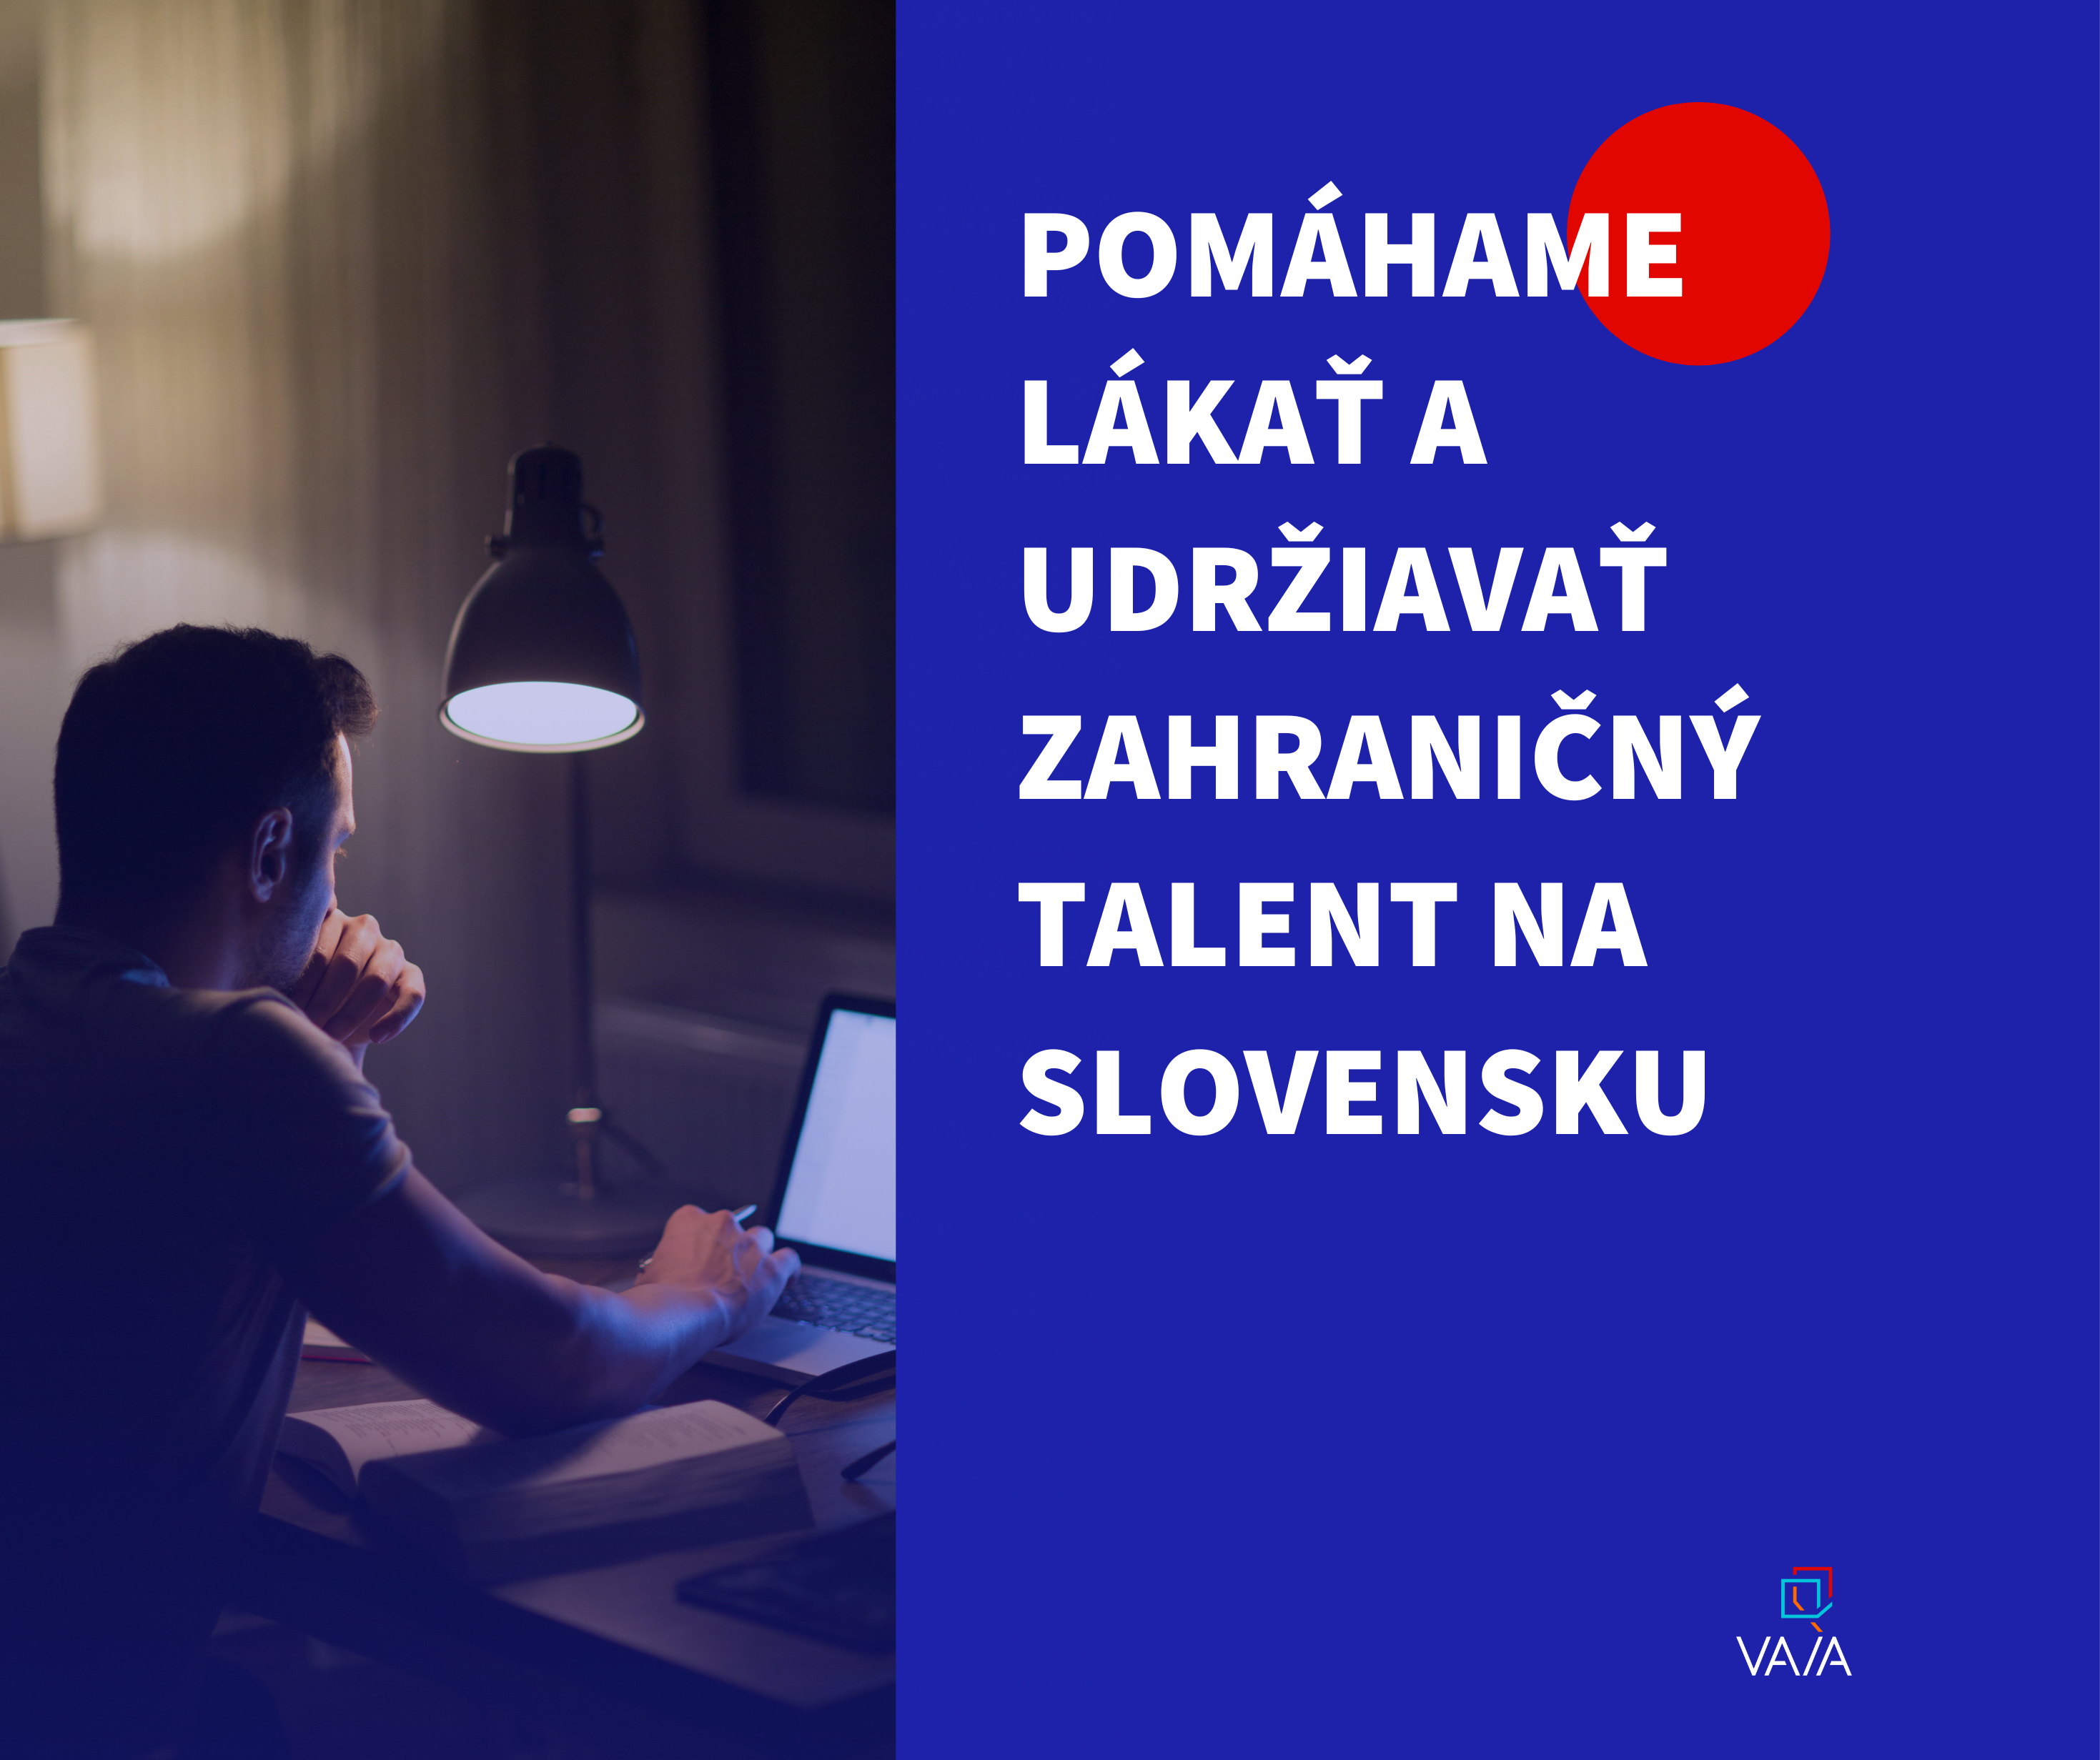 Vytvárame podmienky pre lepšiu jazykovú integráciu zahraničného talentu na Slovensku